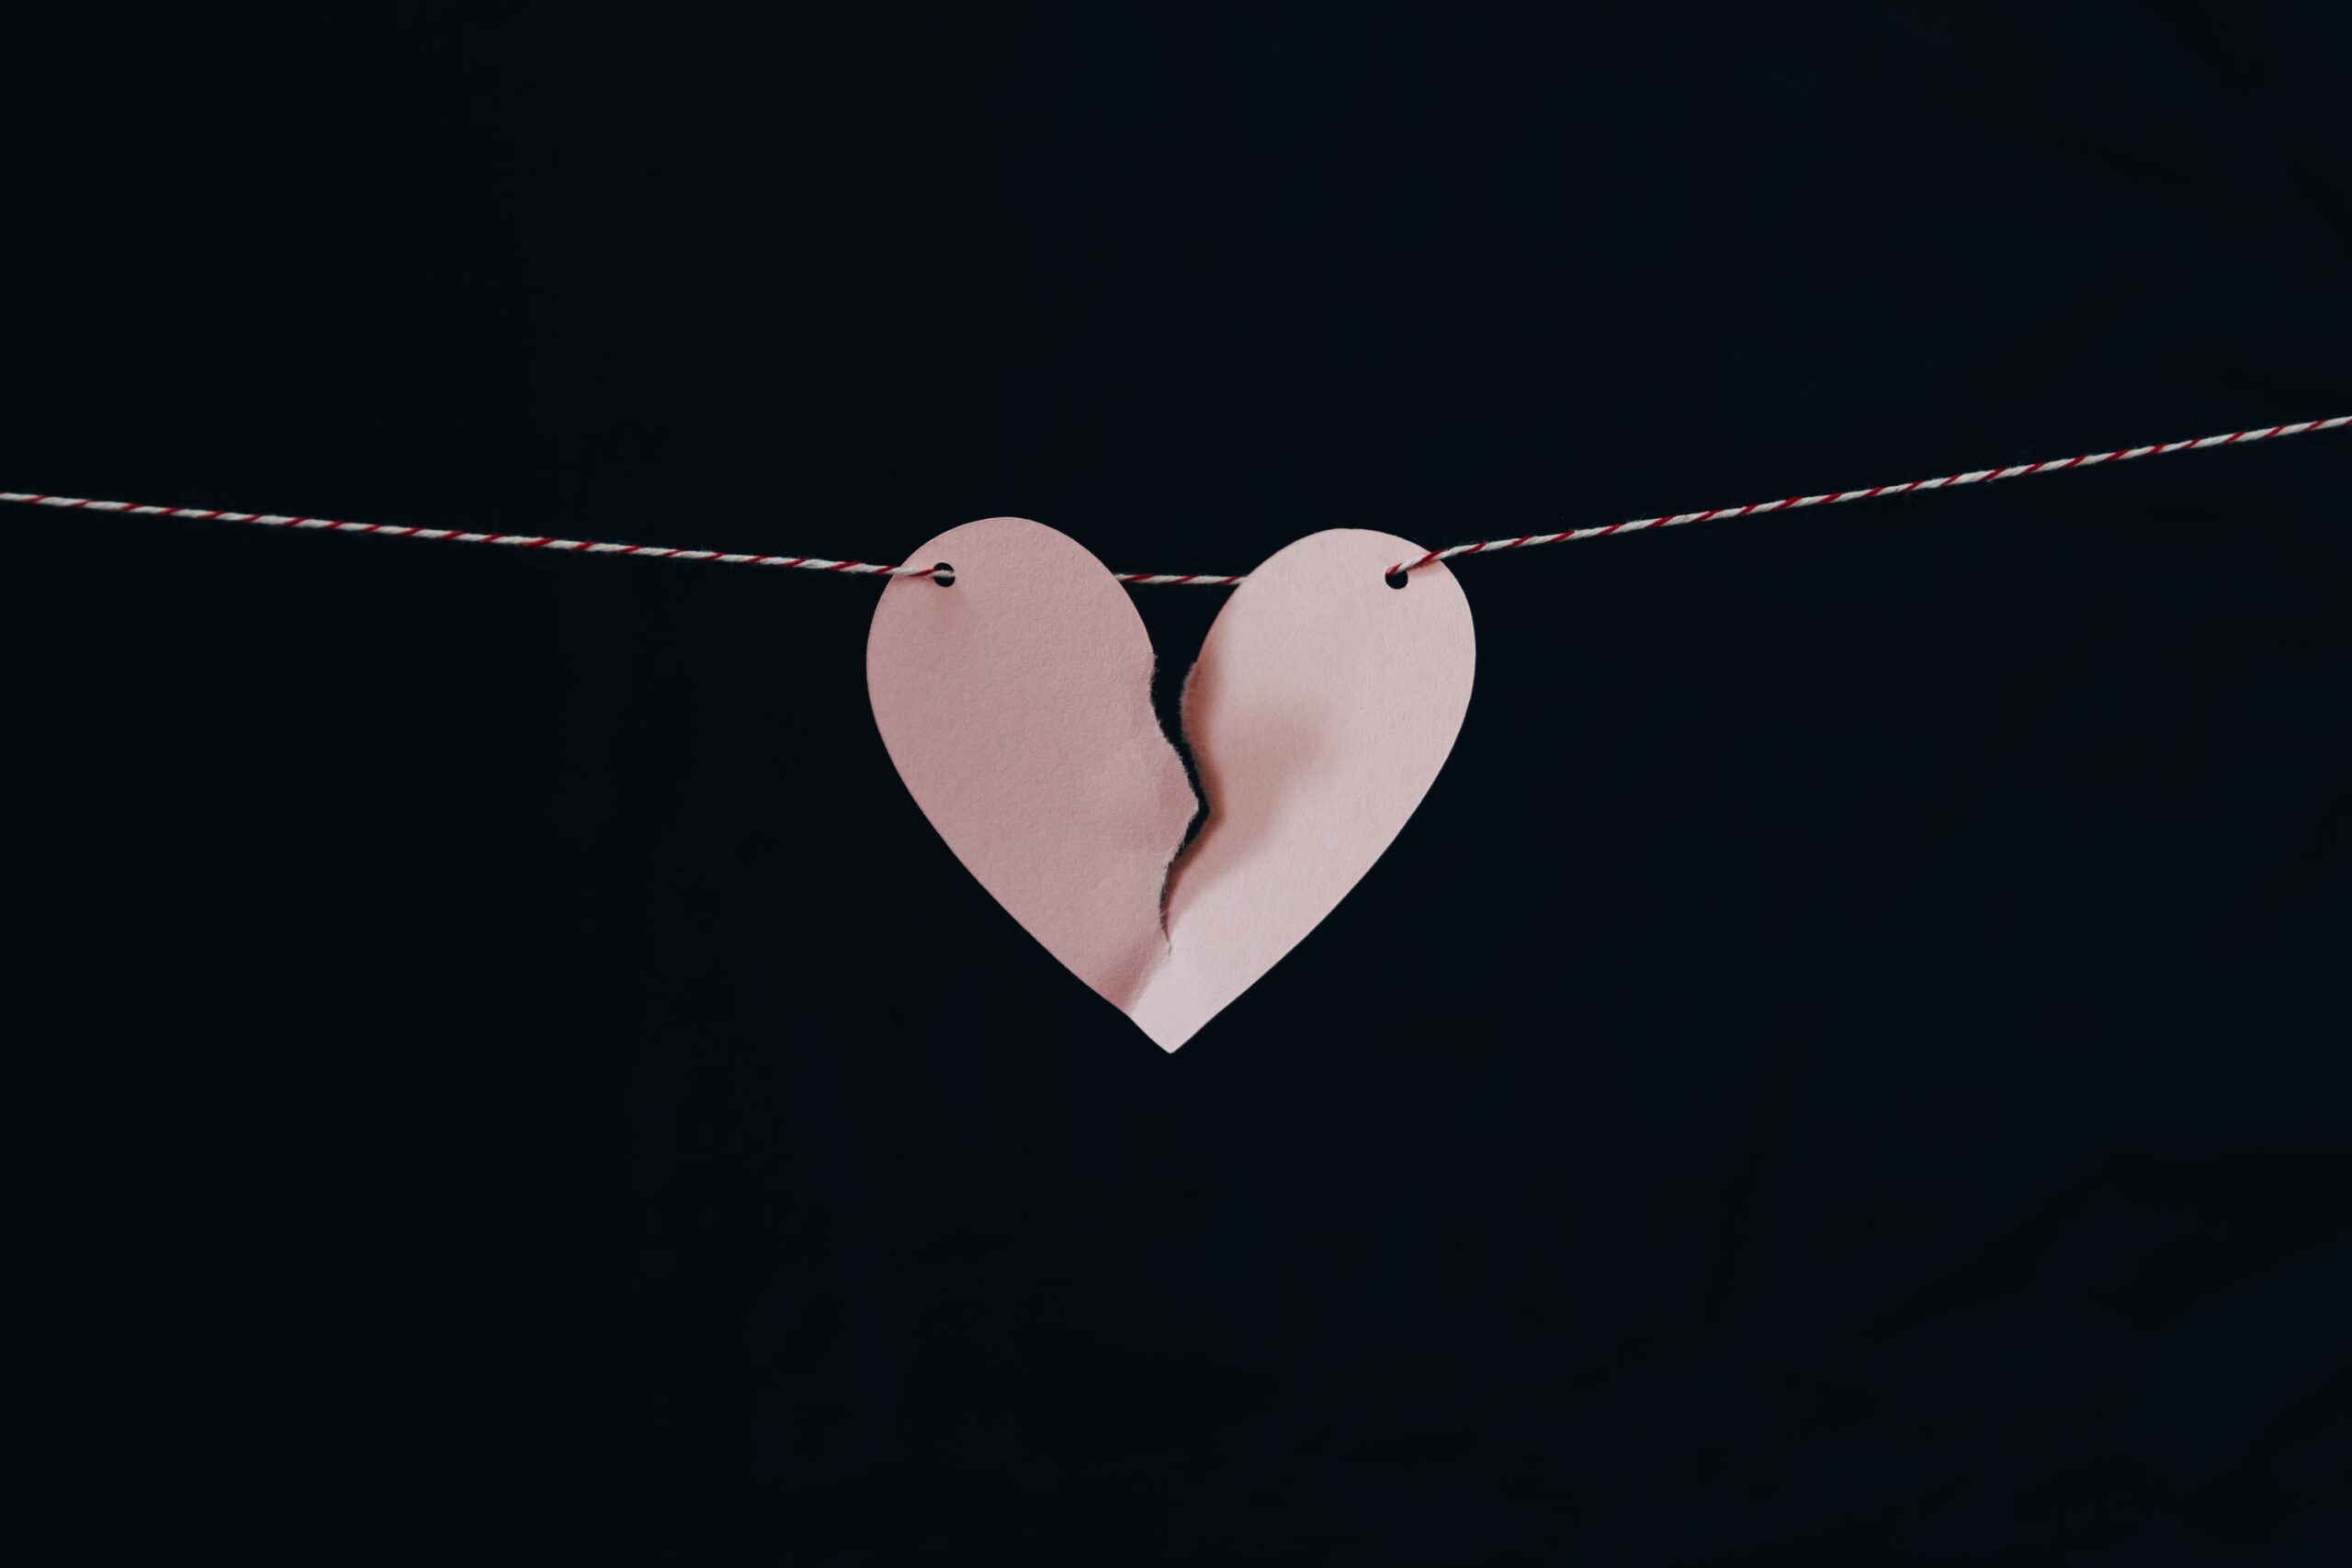 immagine di un cuore di carte a simboleggiare la fine di una relazione dopo una separazione e un divorzio